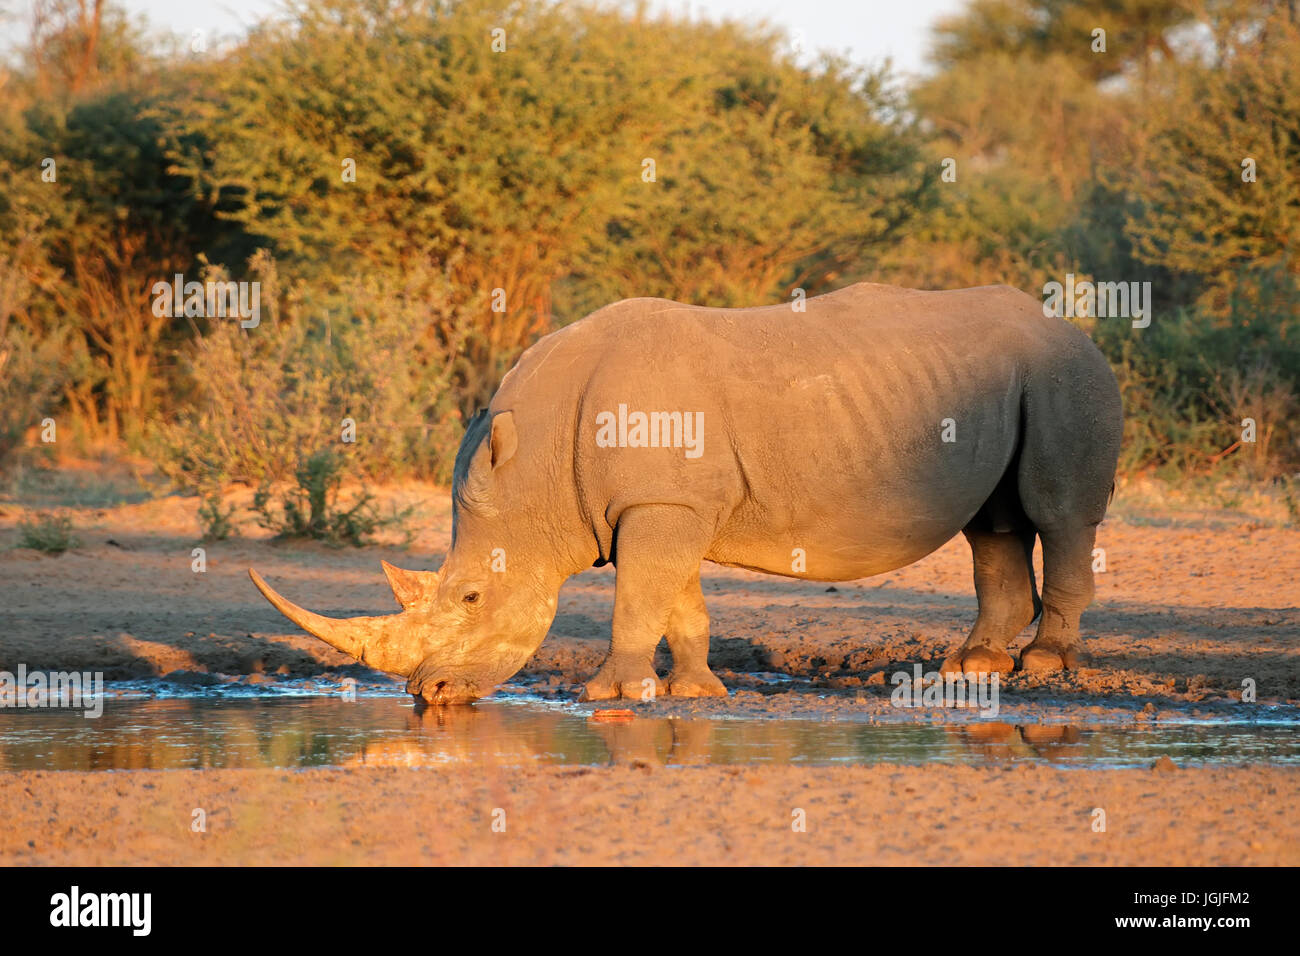 Le rhinocéros blanc (Ceratotherium simum) Eau potable en fin d'après-midi, lumière, Afrique du Sud Banque D'Images